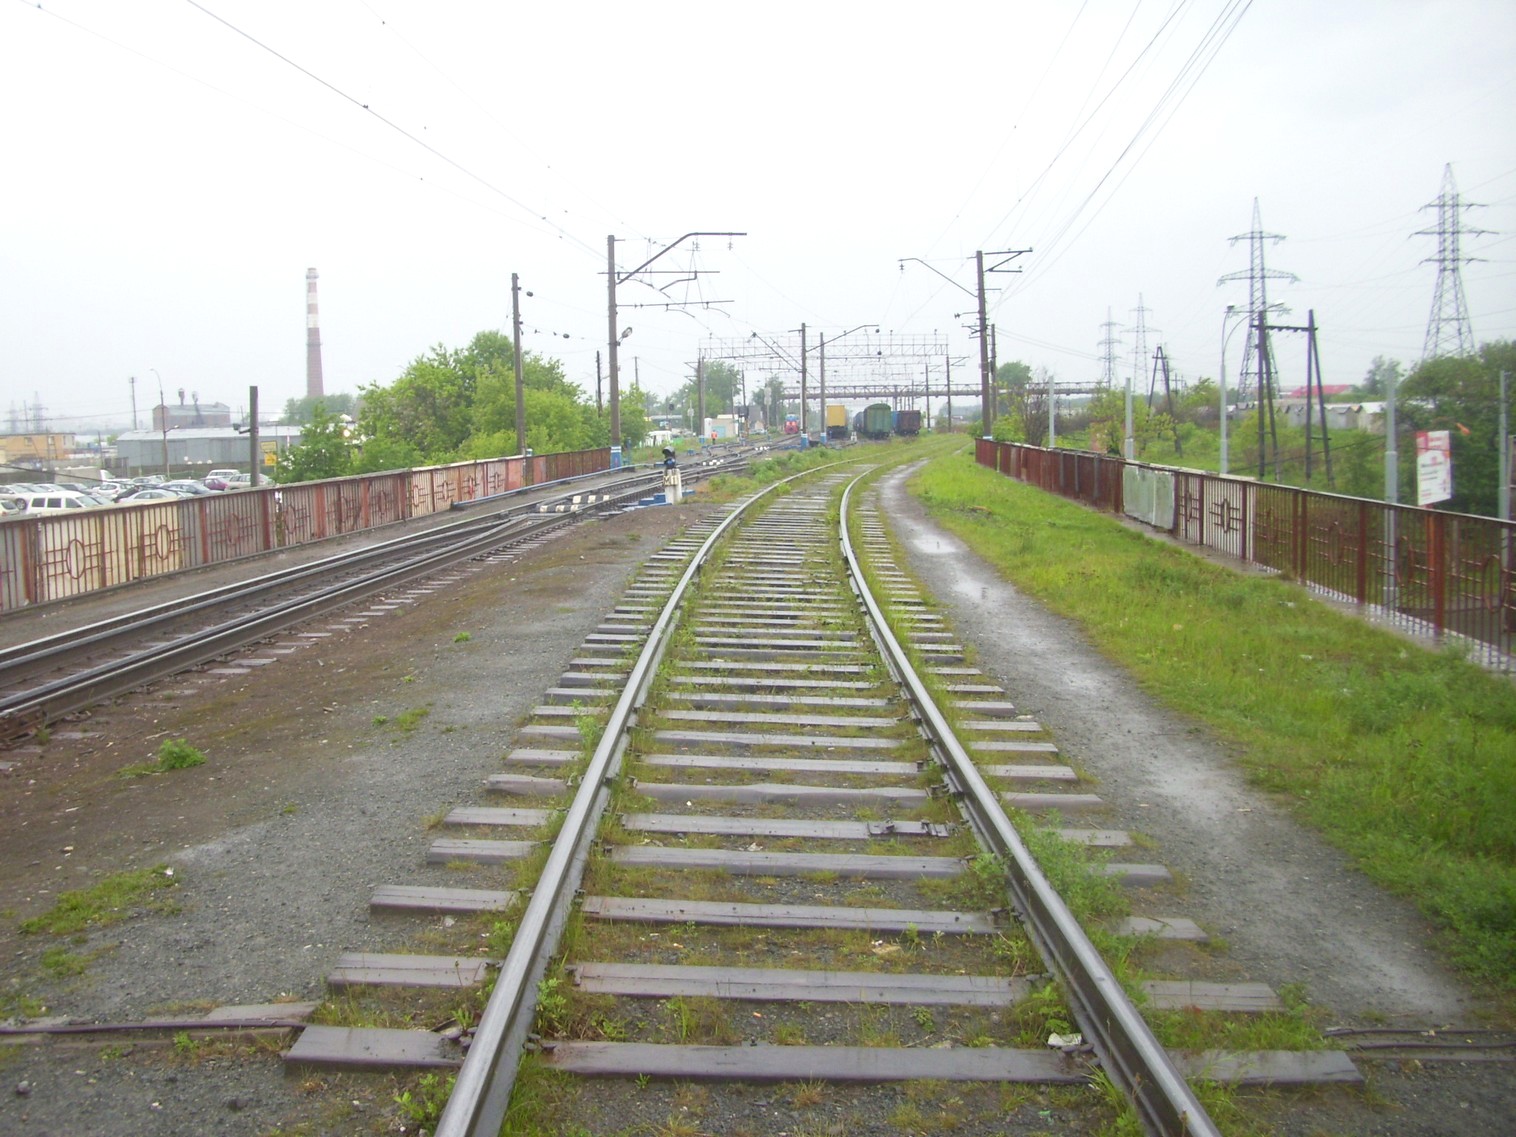 Железнодорожная линия предприятия железнодорожного транспорта завода «Уралмаш»  —  фотографии, сделанные в 2010 году (часть 1)